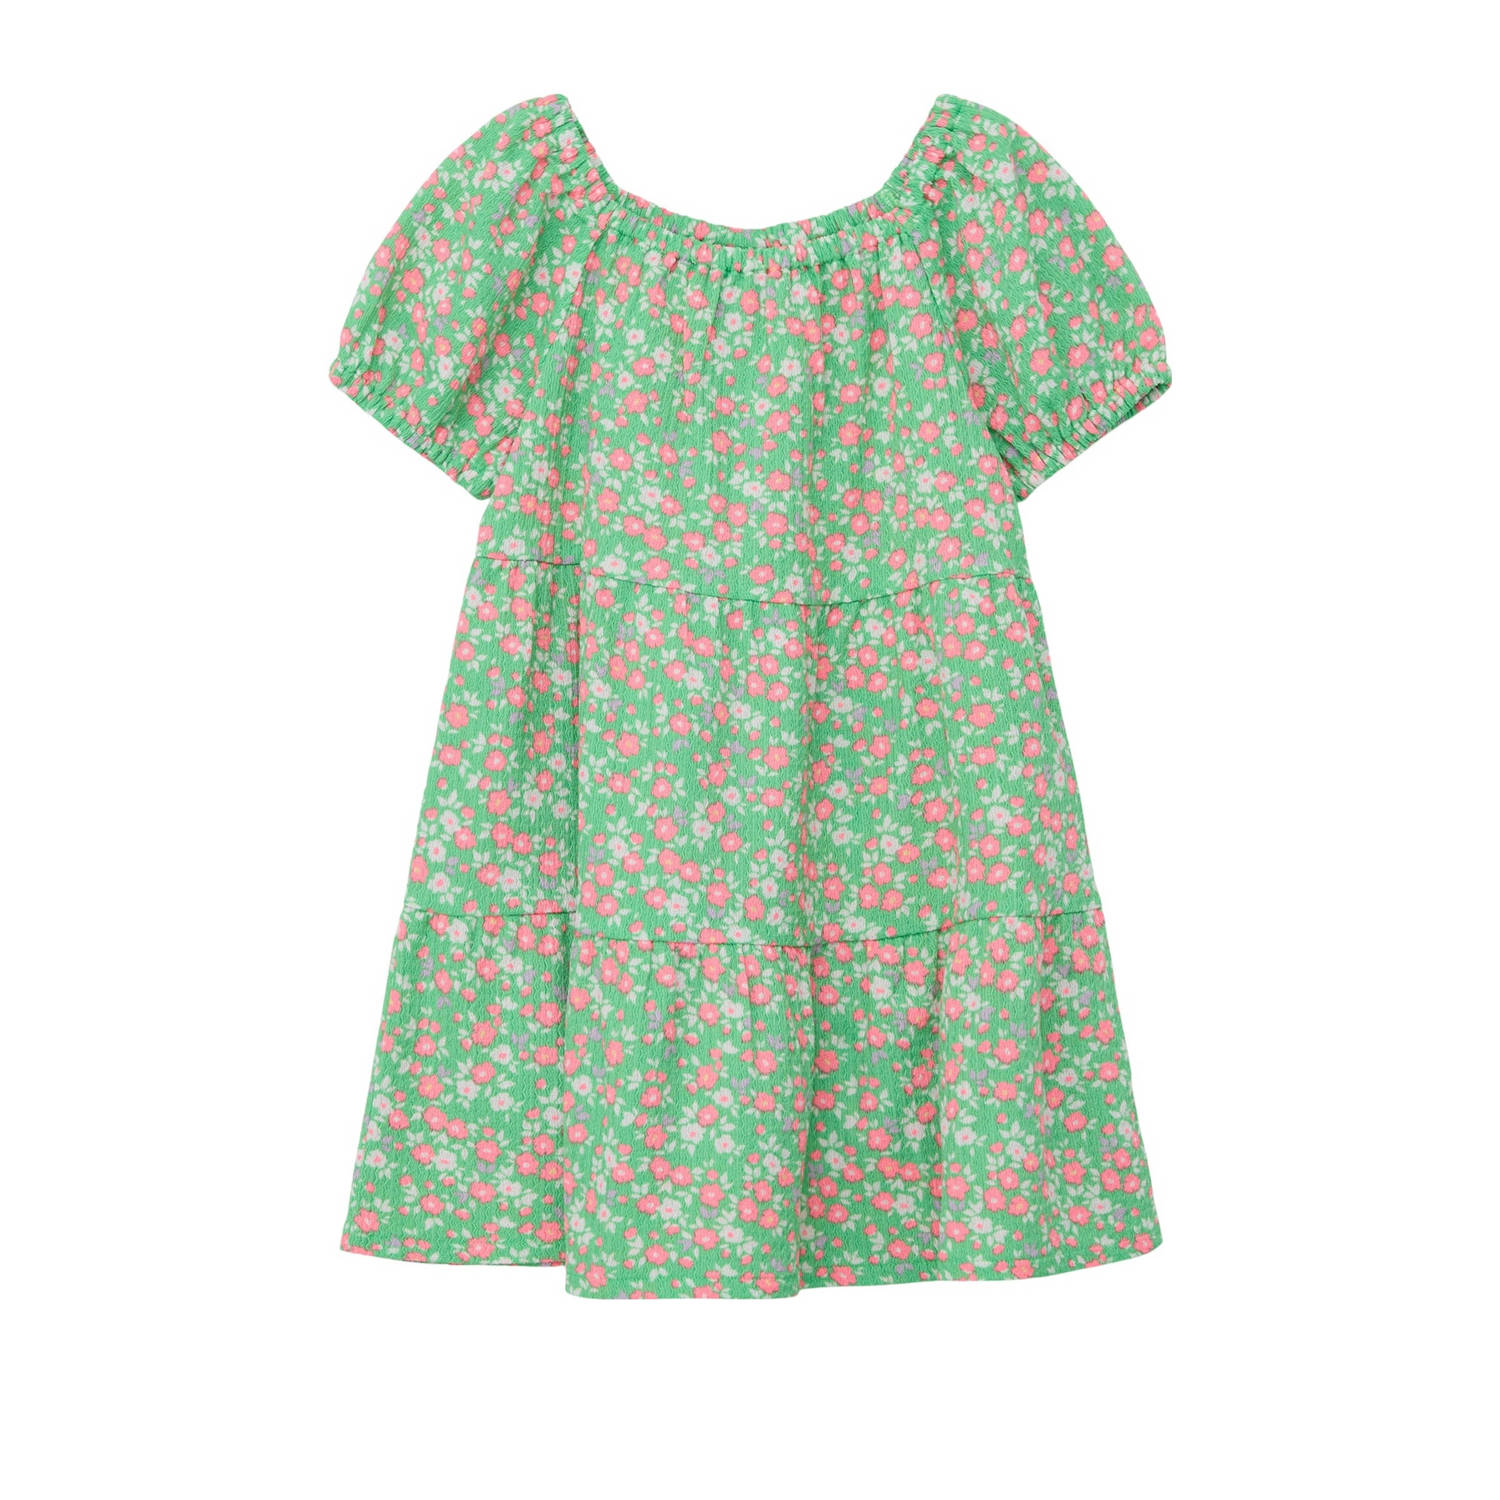 S.Oliver gebloemde jurk groen roze Meisjes Polyester Boothals Bloemen 116